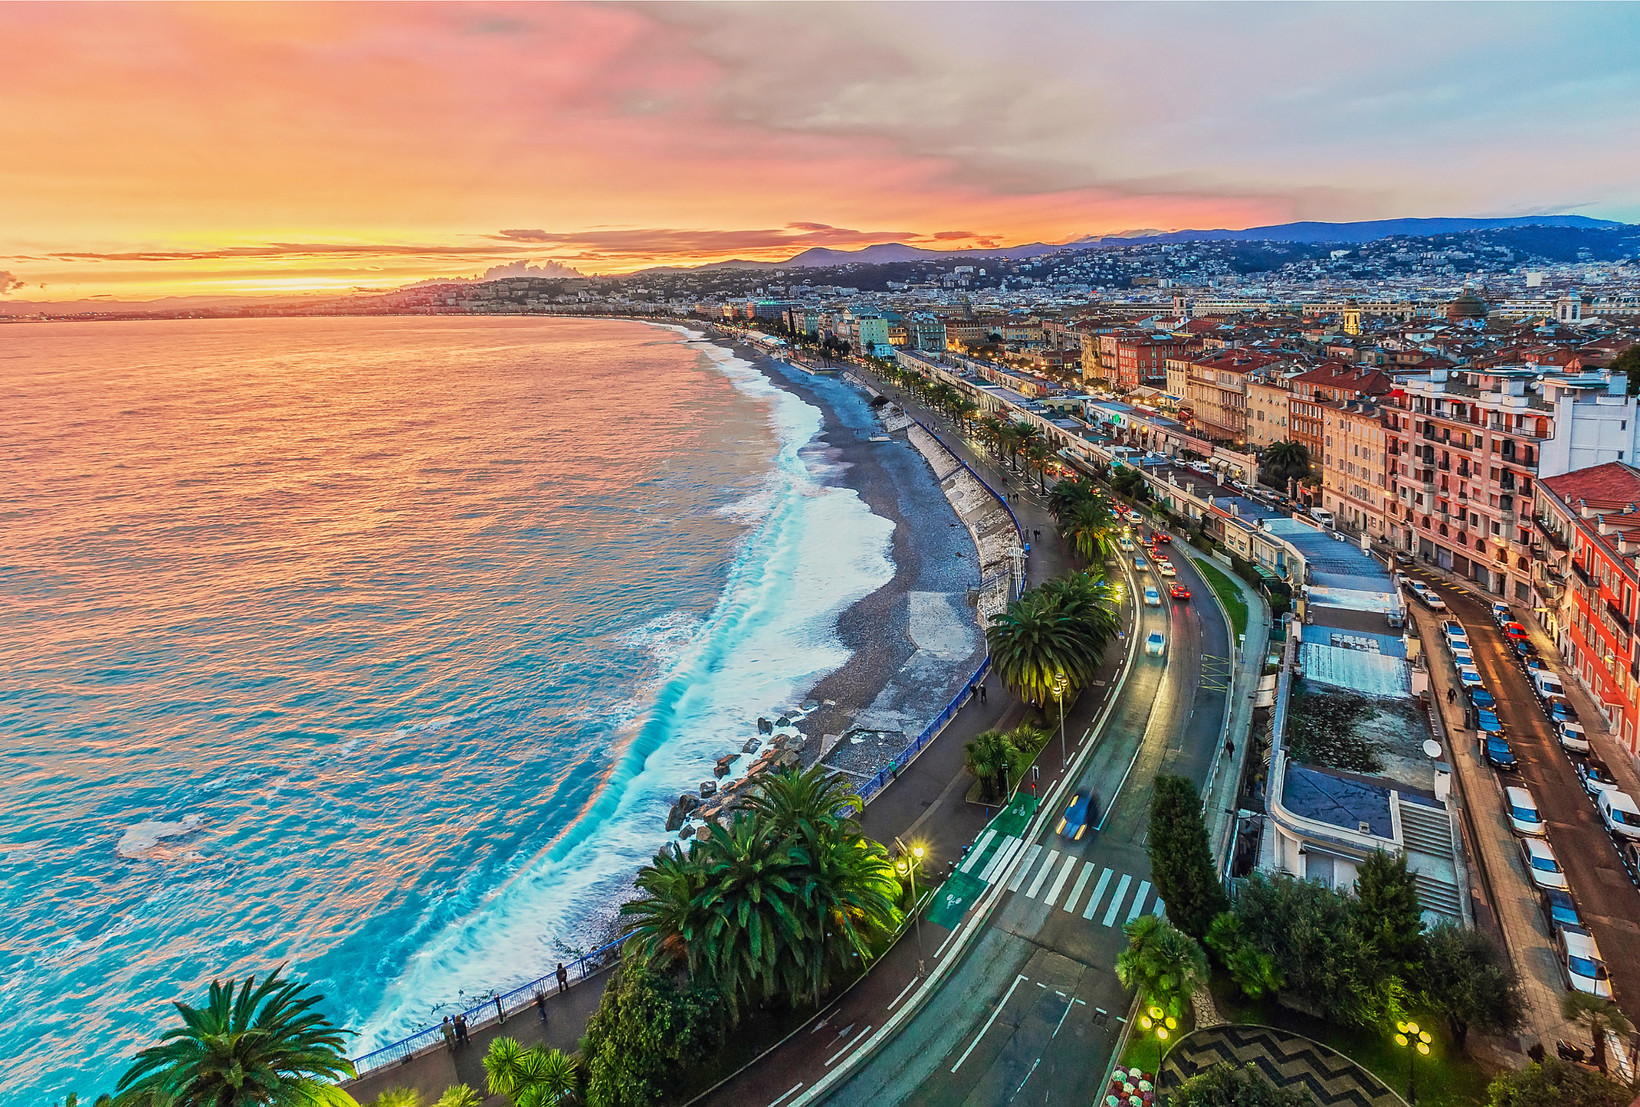 Le marché de l'immobilier de luxe à Nice